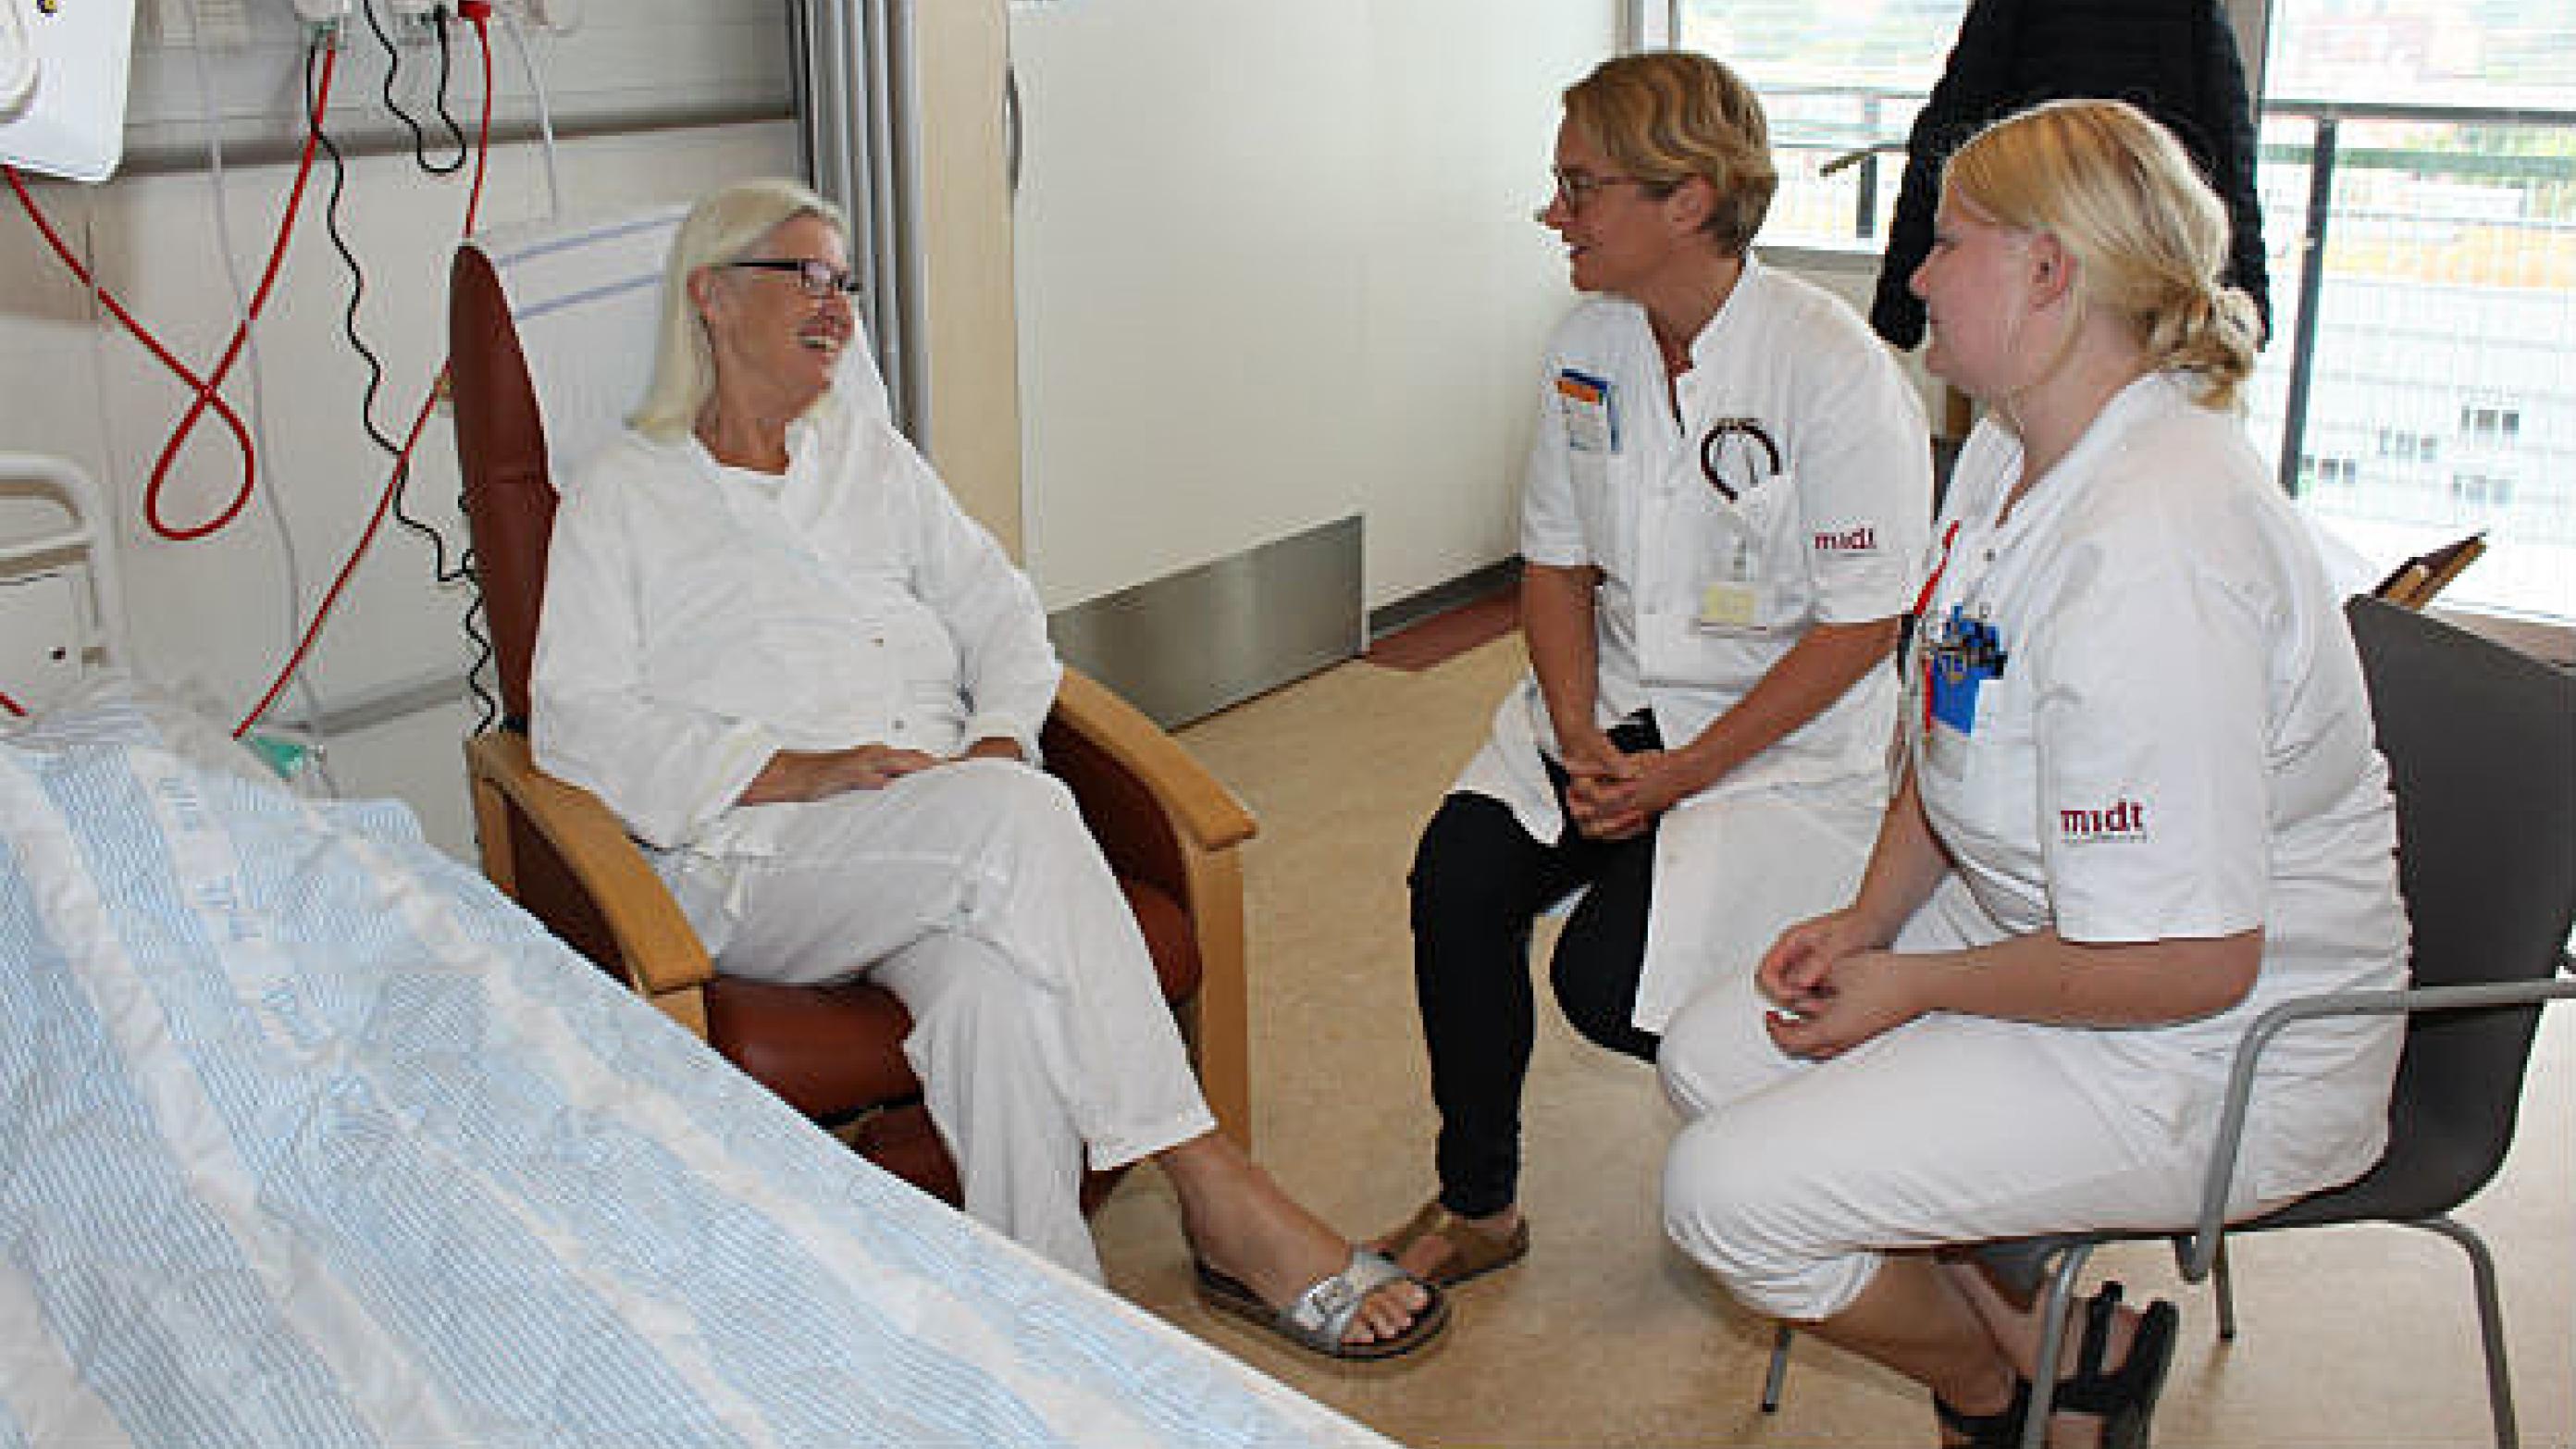 Siden september har Medicinsk Afdeling i Horsens haft stuegangsuger. Her er det overlæge Mette Nygaard Christensen og sygeplejerske Mia Andersen med en patient. Foto: Regionshospitalet Horsens